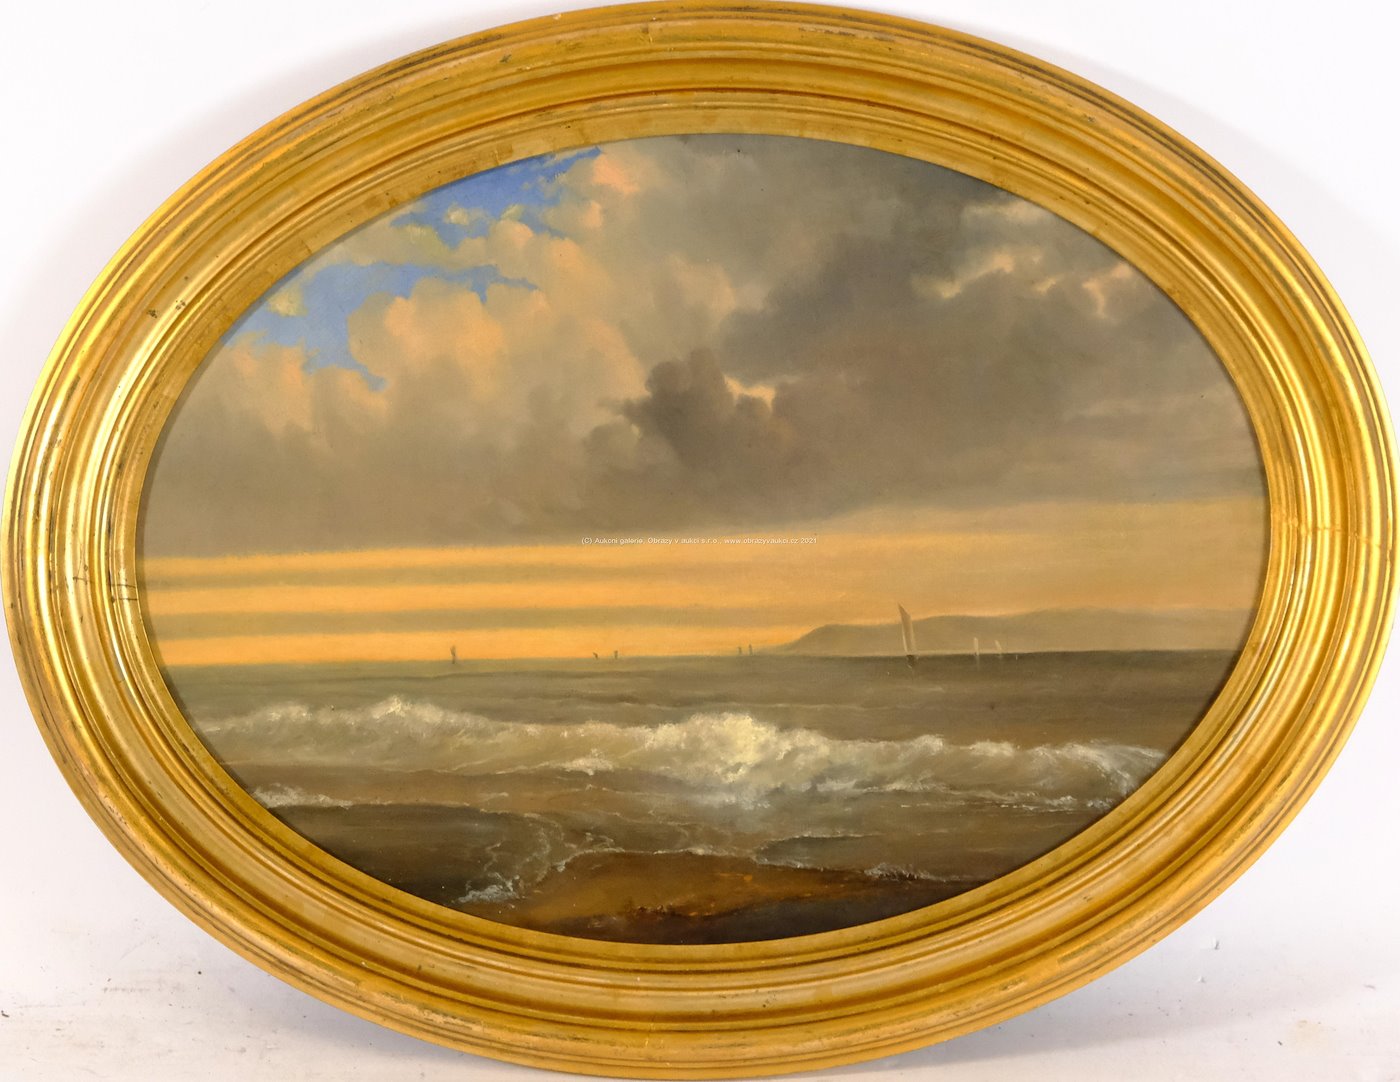 Nesignováno (středoevropský malíř druhé poloviny 19. století) - Loďky na moři